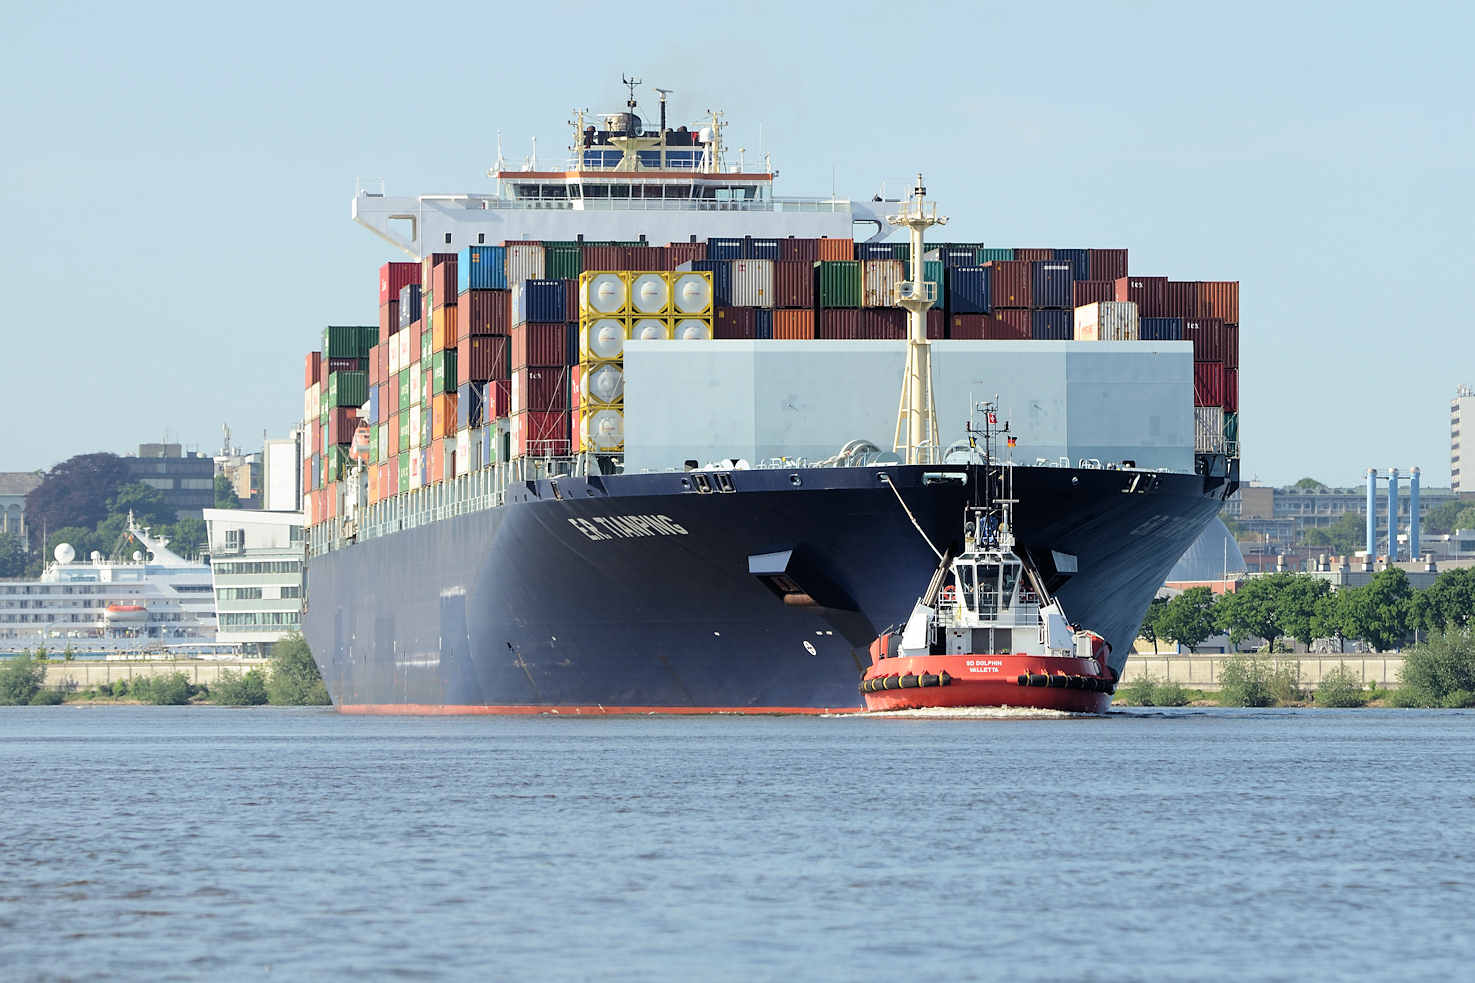 9258 Der Containerfrachter E.R. Tianping läuft in den Hamburger Hafen ein; | Schiffsbilder Hamburger Hafen - Schiffsverkehr Elbe